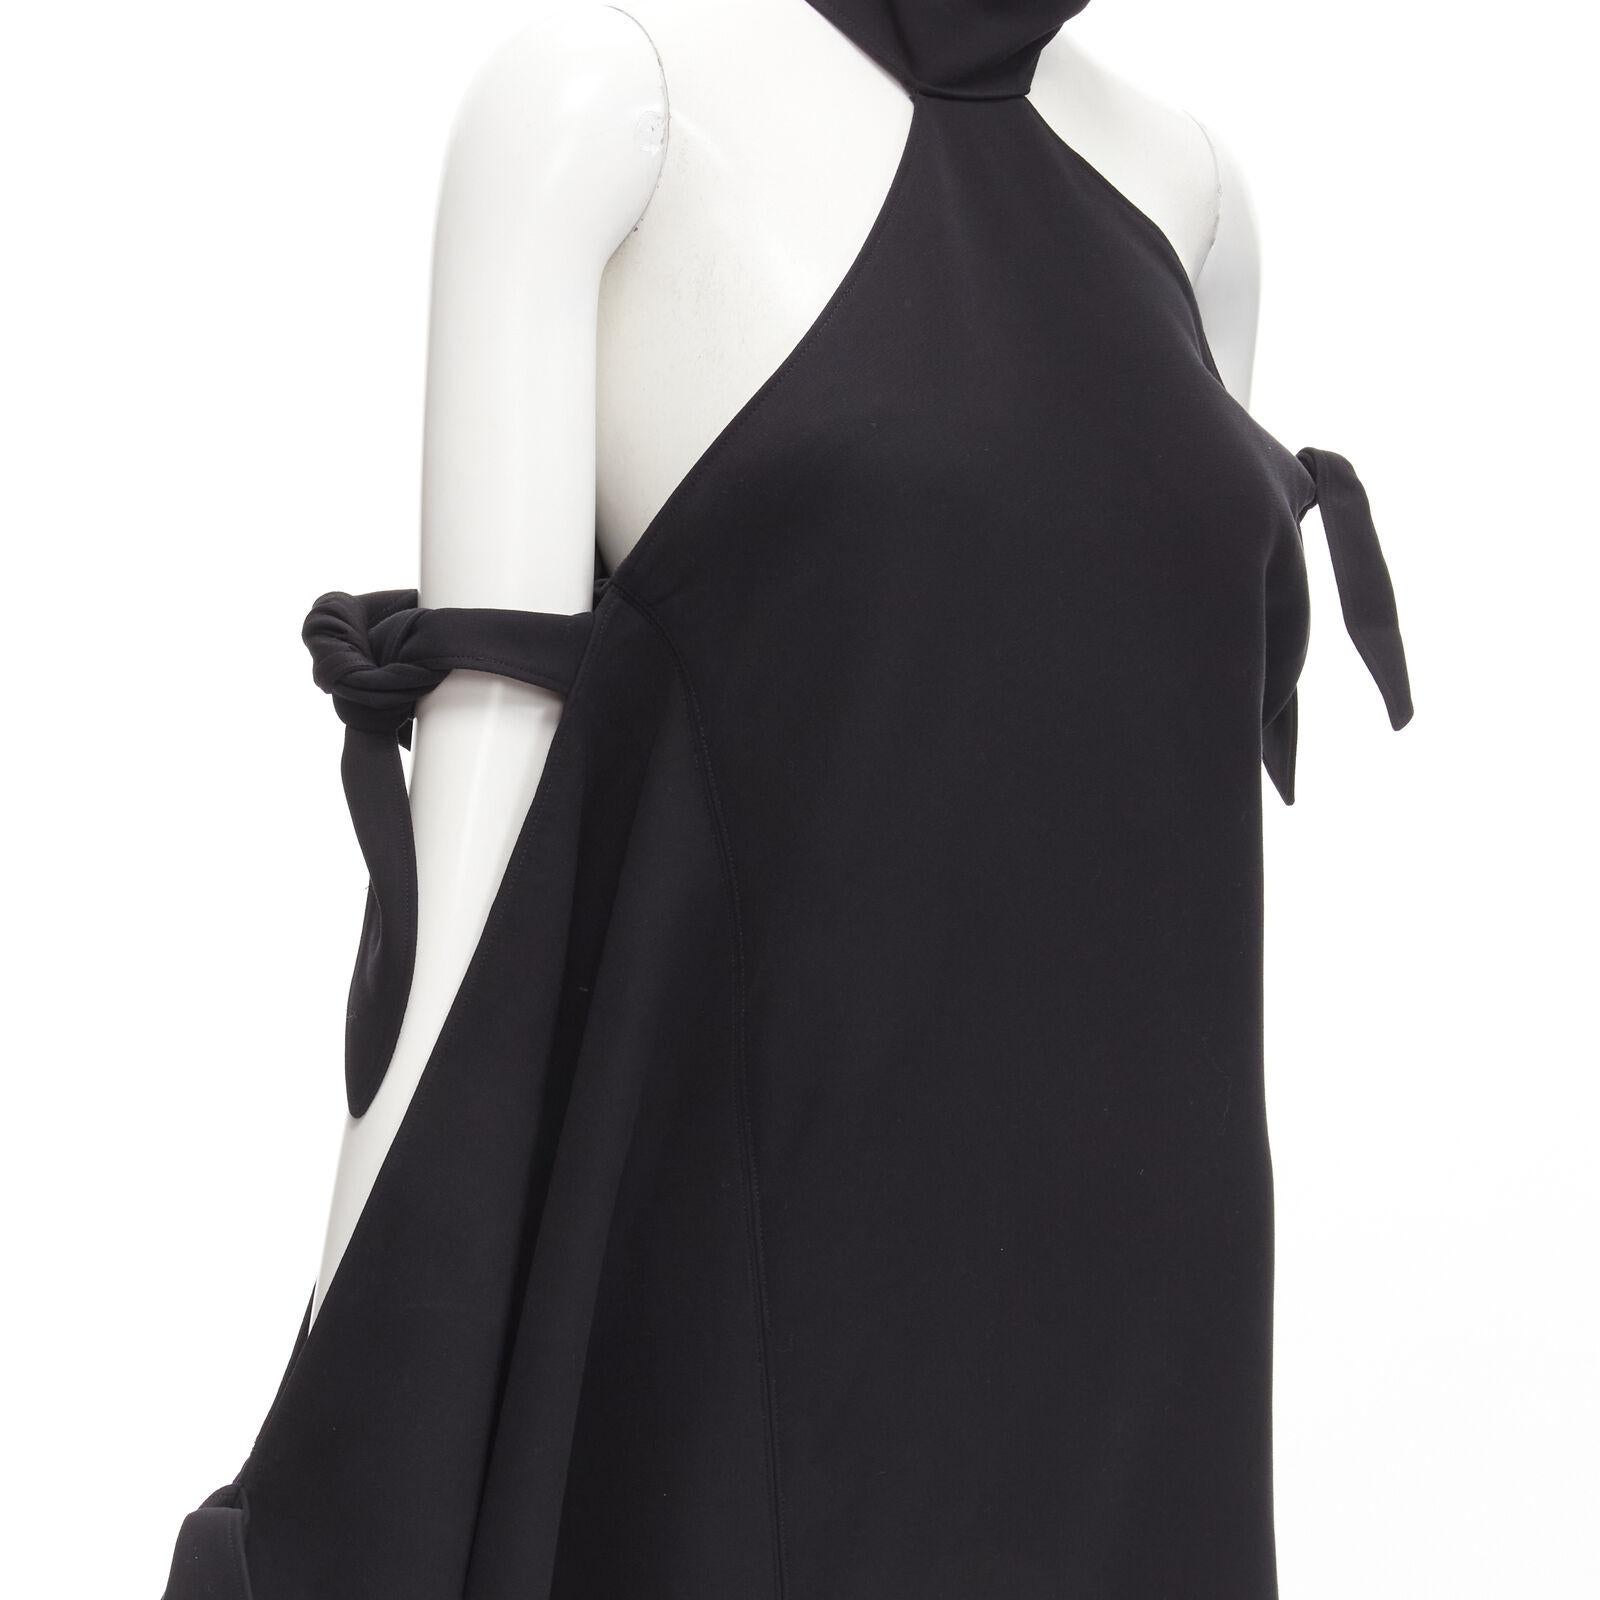 ROSIE ASSOULIN 2015 Runway black cold shoulder high slit halter gown dress US2 S For Sale 3